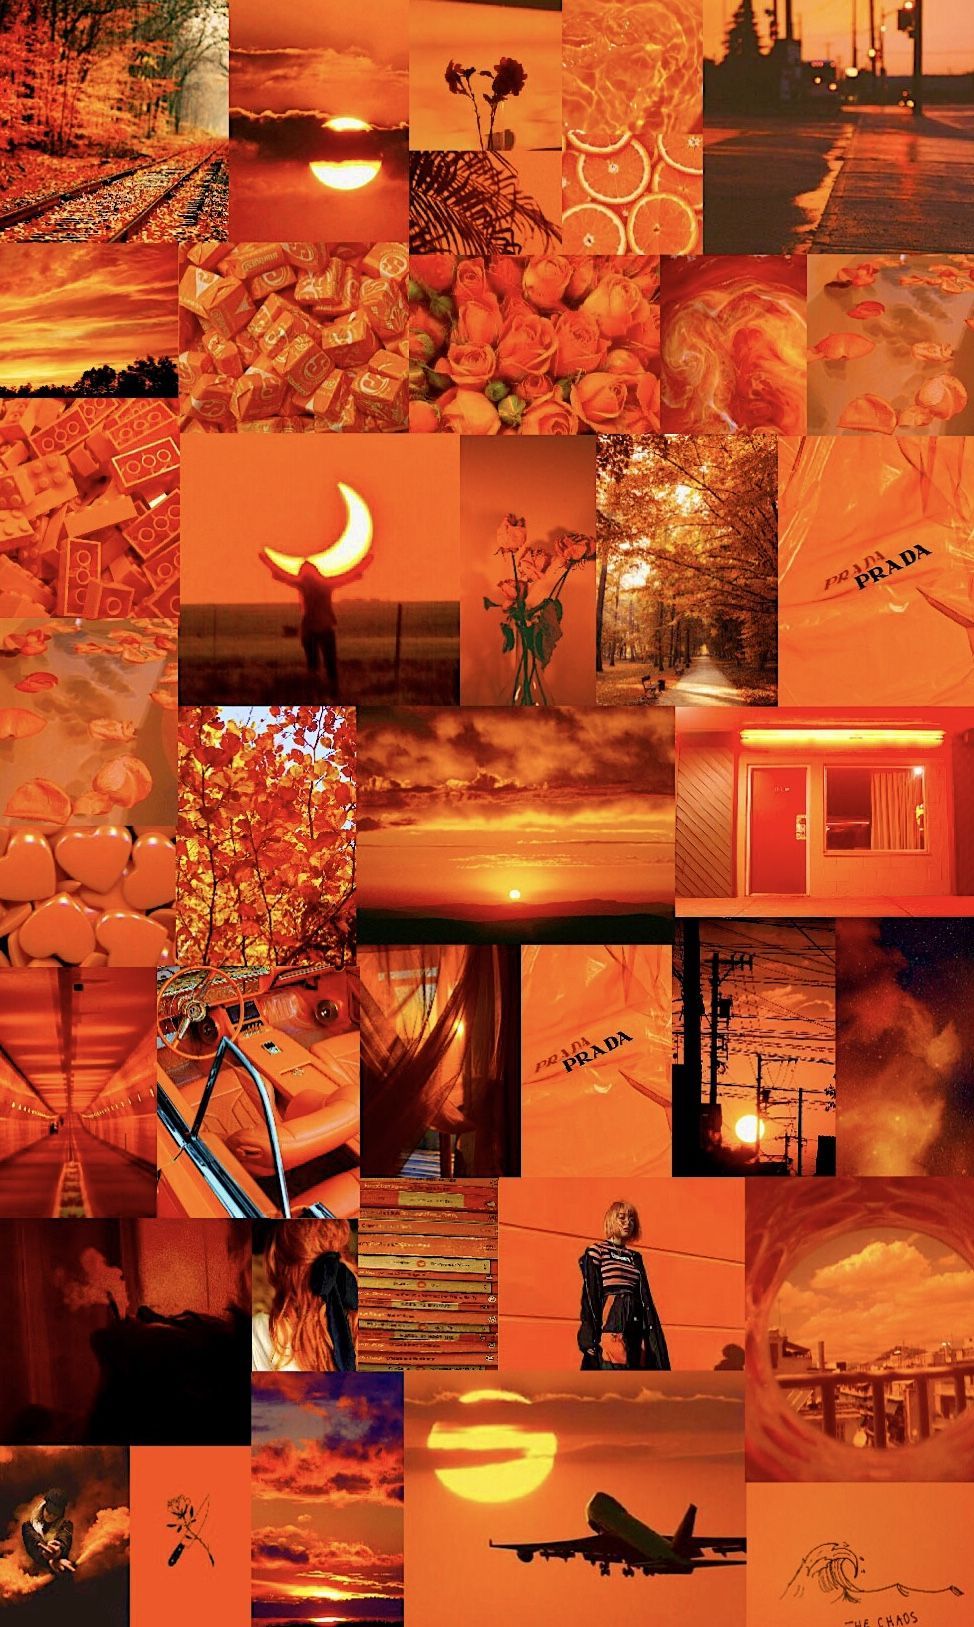 Orange aesthetic wallpaper. Aesthetic wallpaper, Orange aesthetic, Aesthetic iphone wallpaper